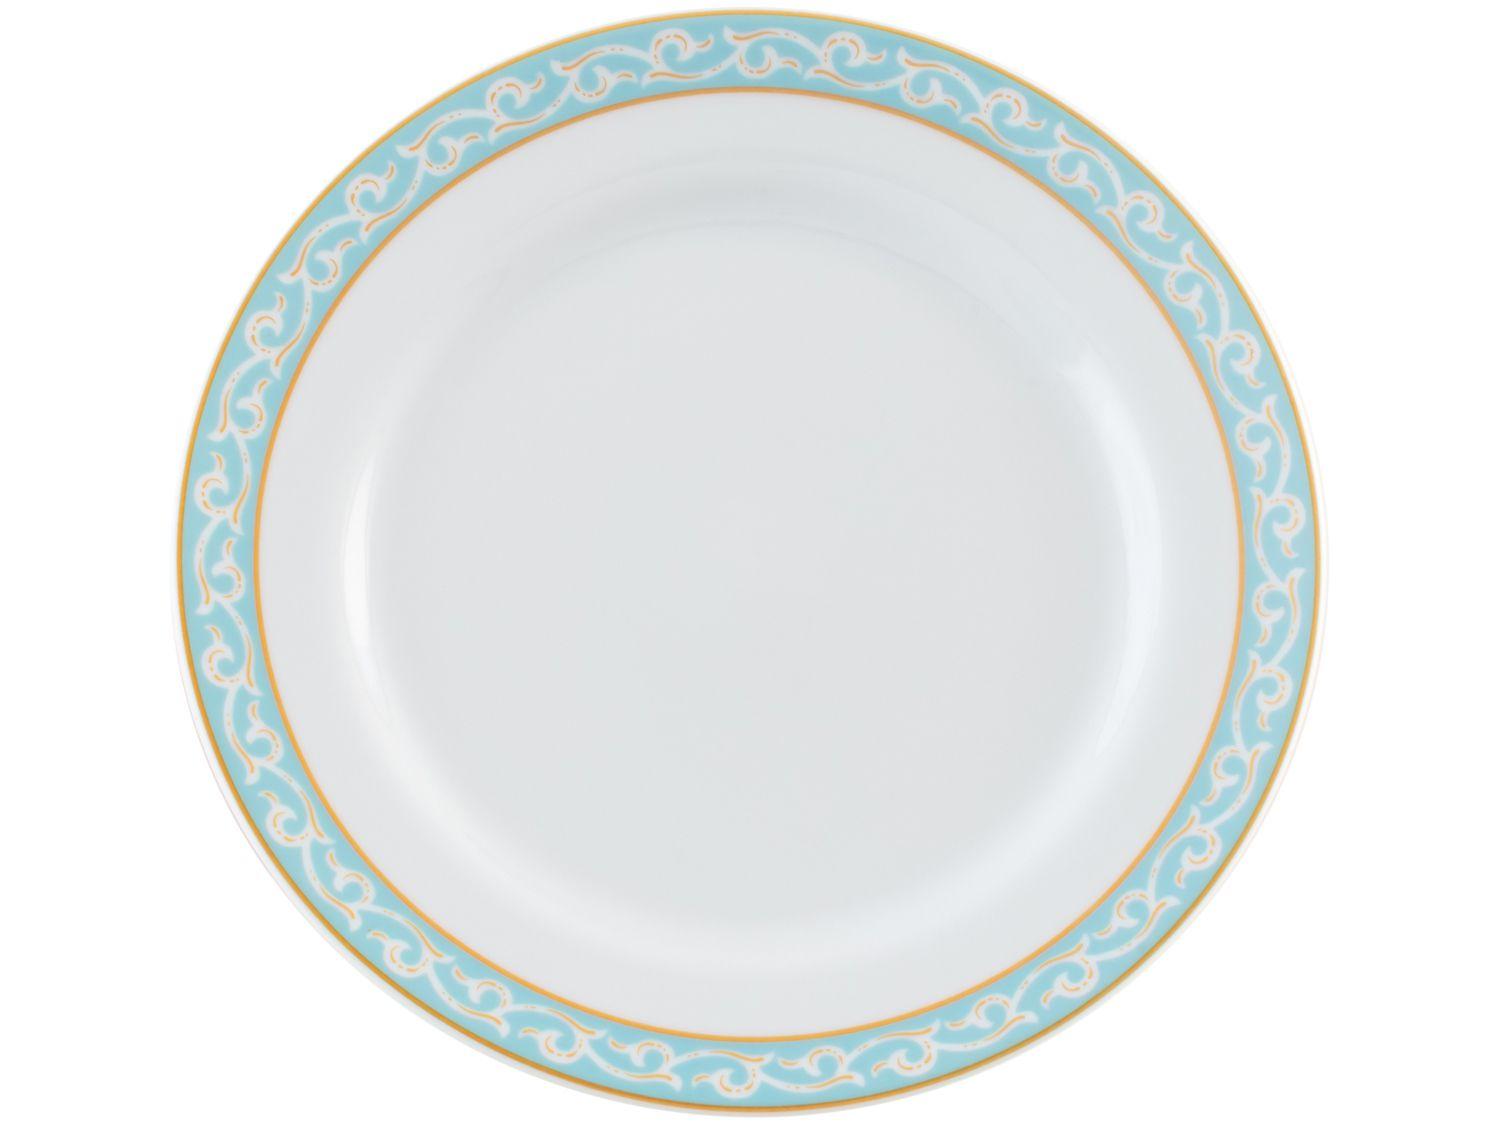 Aparelho Jantar e Chá 30 Peças Porcelana Schmidt - Dec. Blue Oak - SCHMIDT